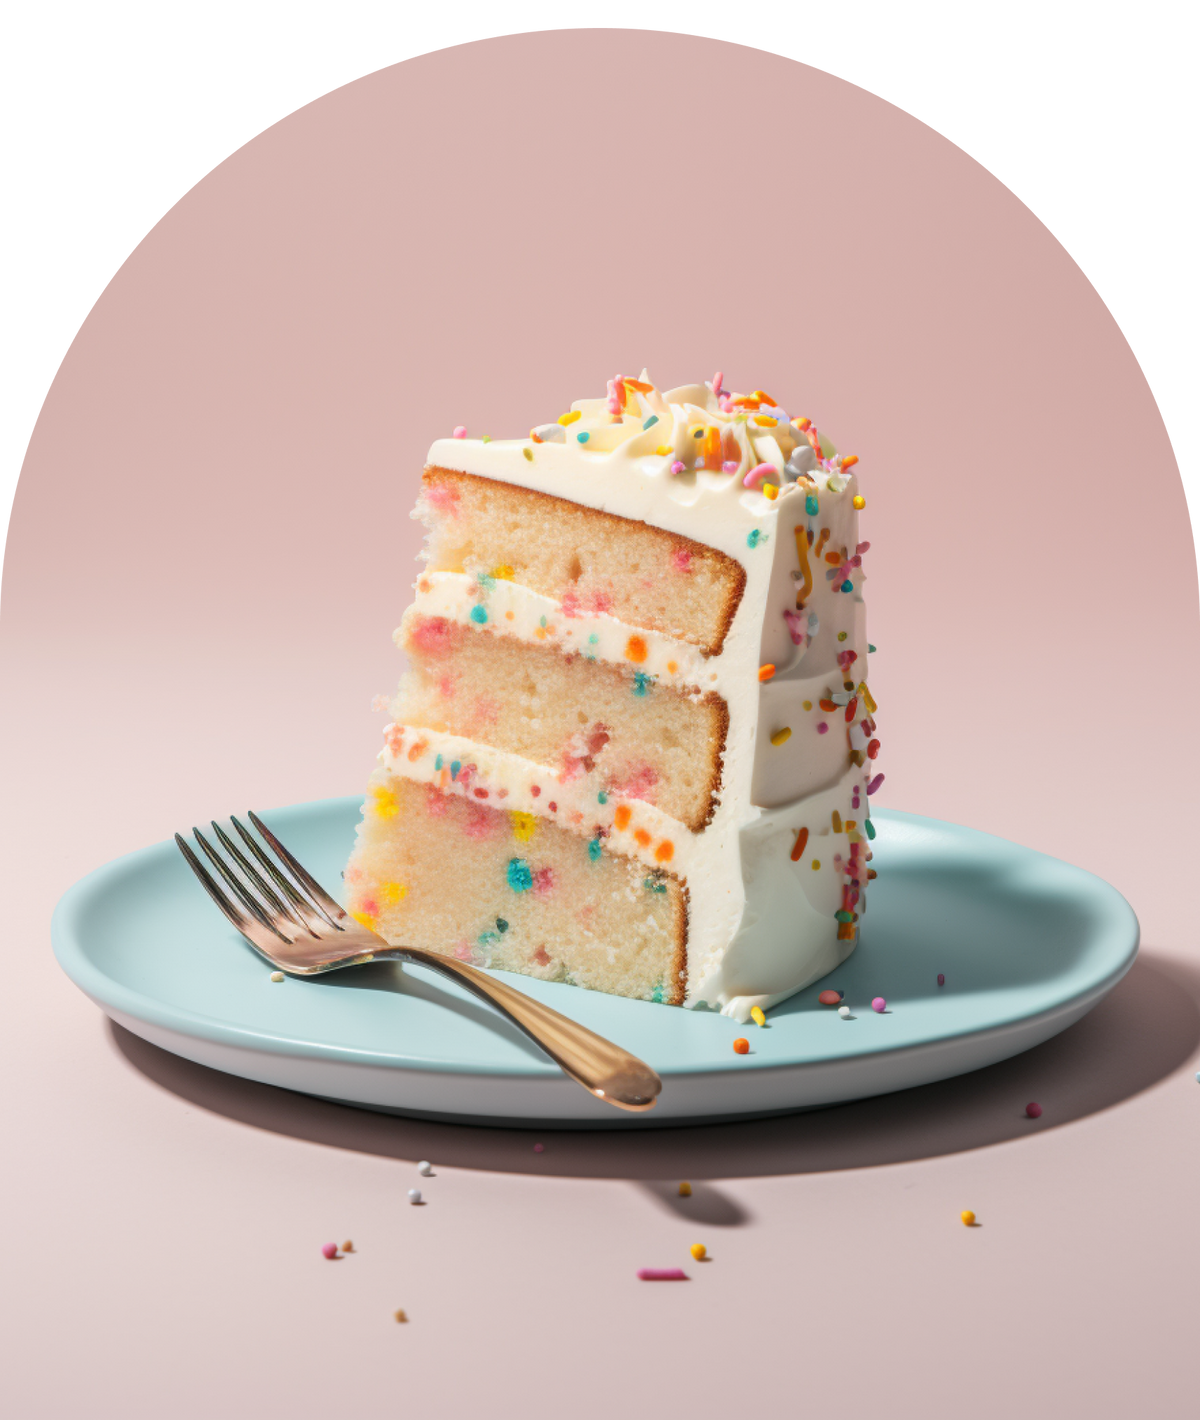 Slice of birthday cake